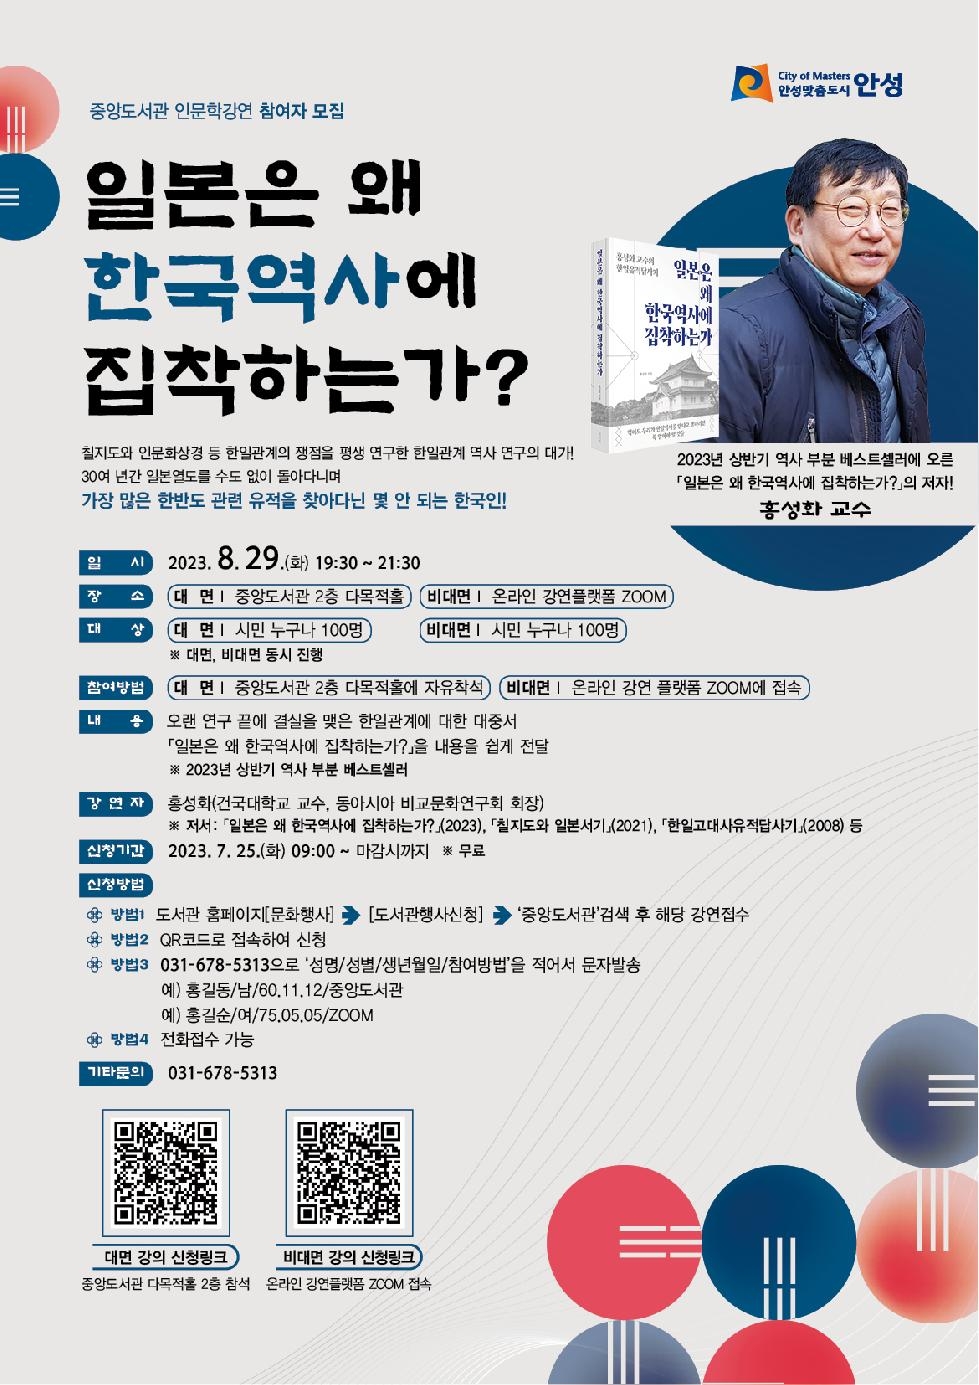 안성시 중앙도서관 인문학 강연「일본은 왜 한국역사에 집착하는가?」운영